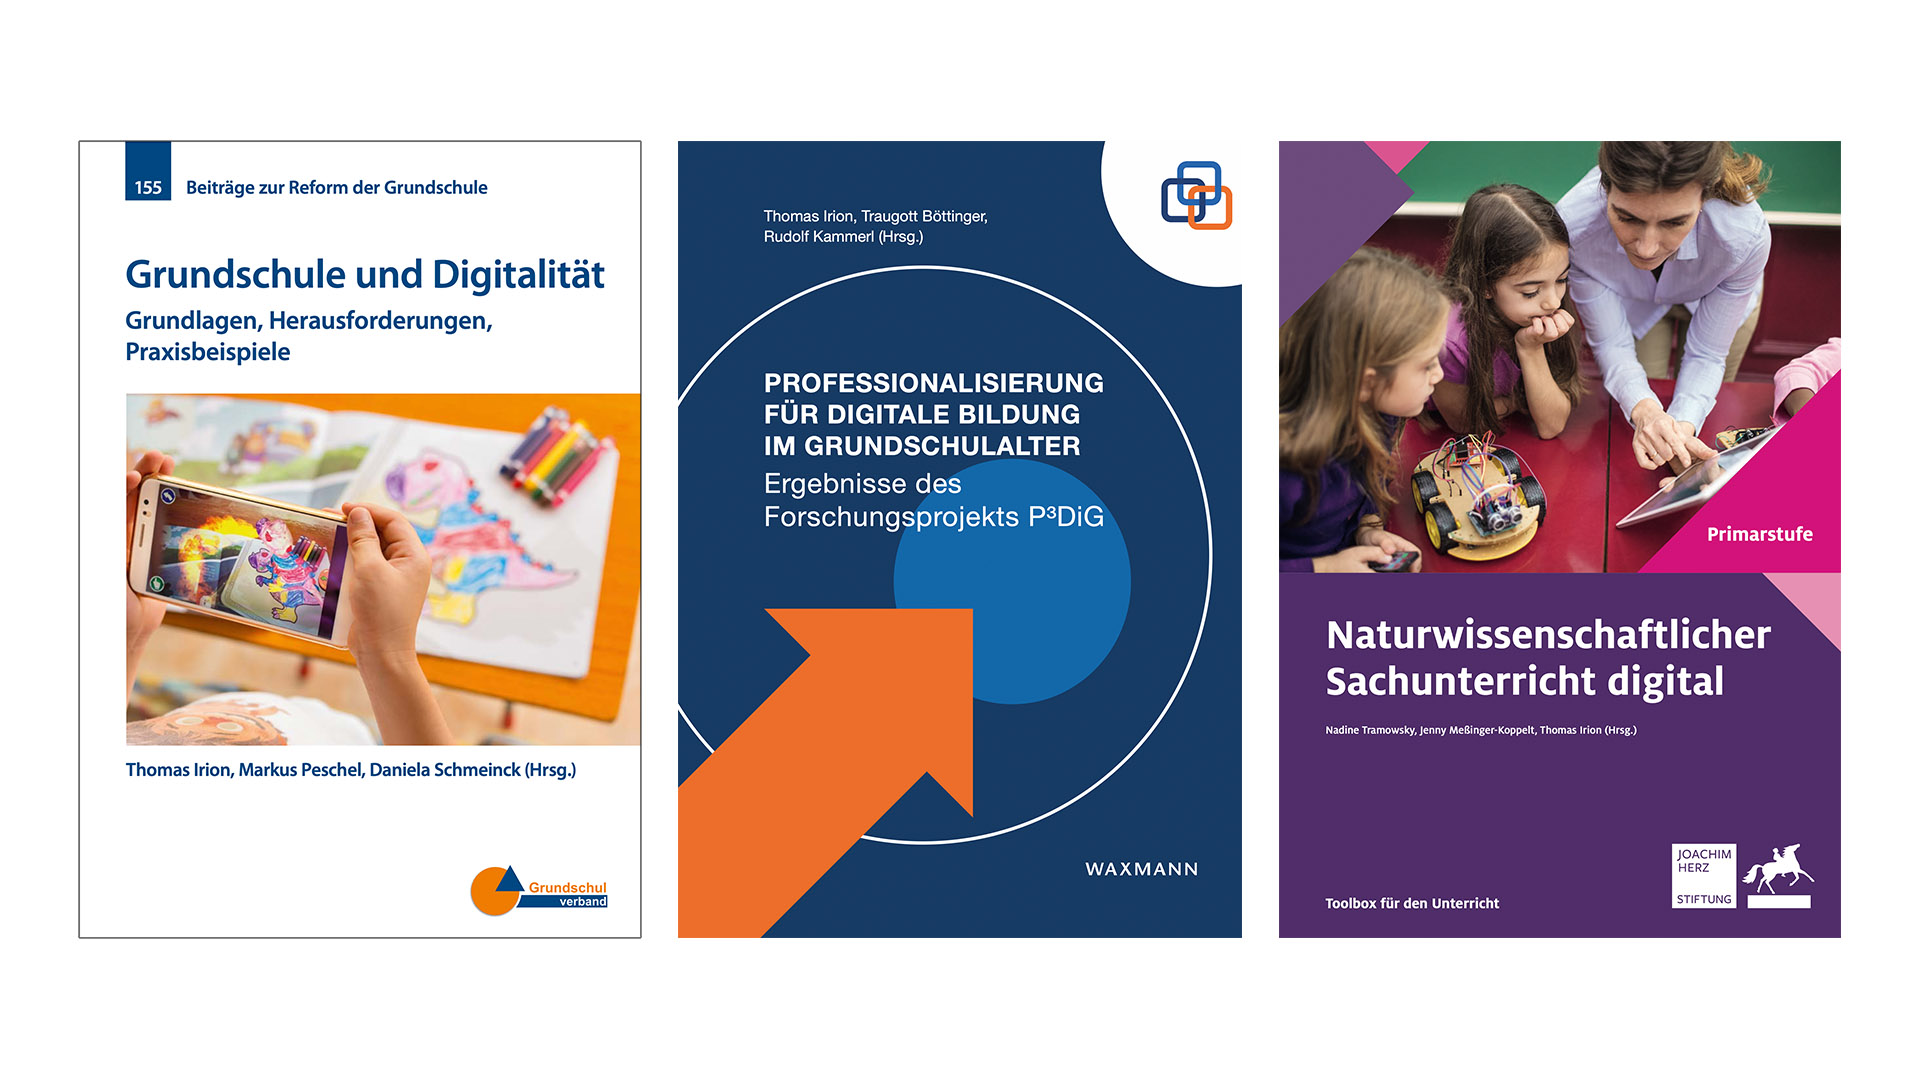 Man sieht die Titelbilder der Open-Access Veröffentlichungen zu digitaler Bildung im Grundschulbereich